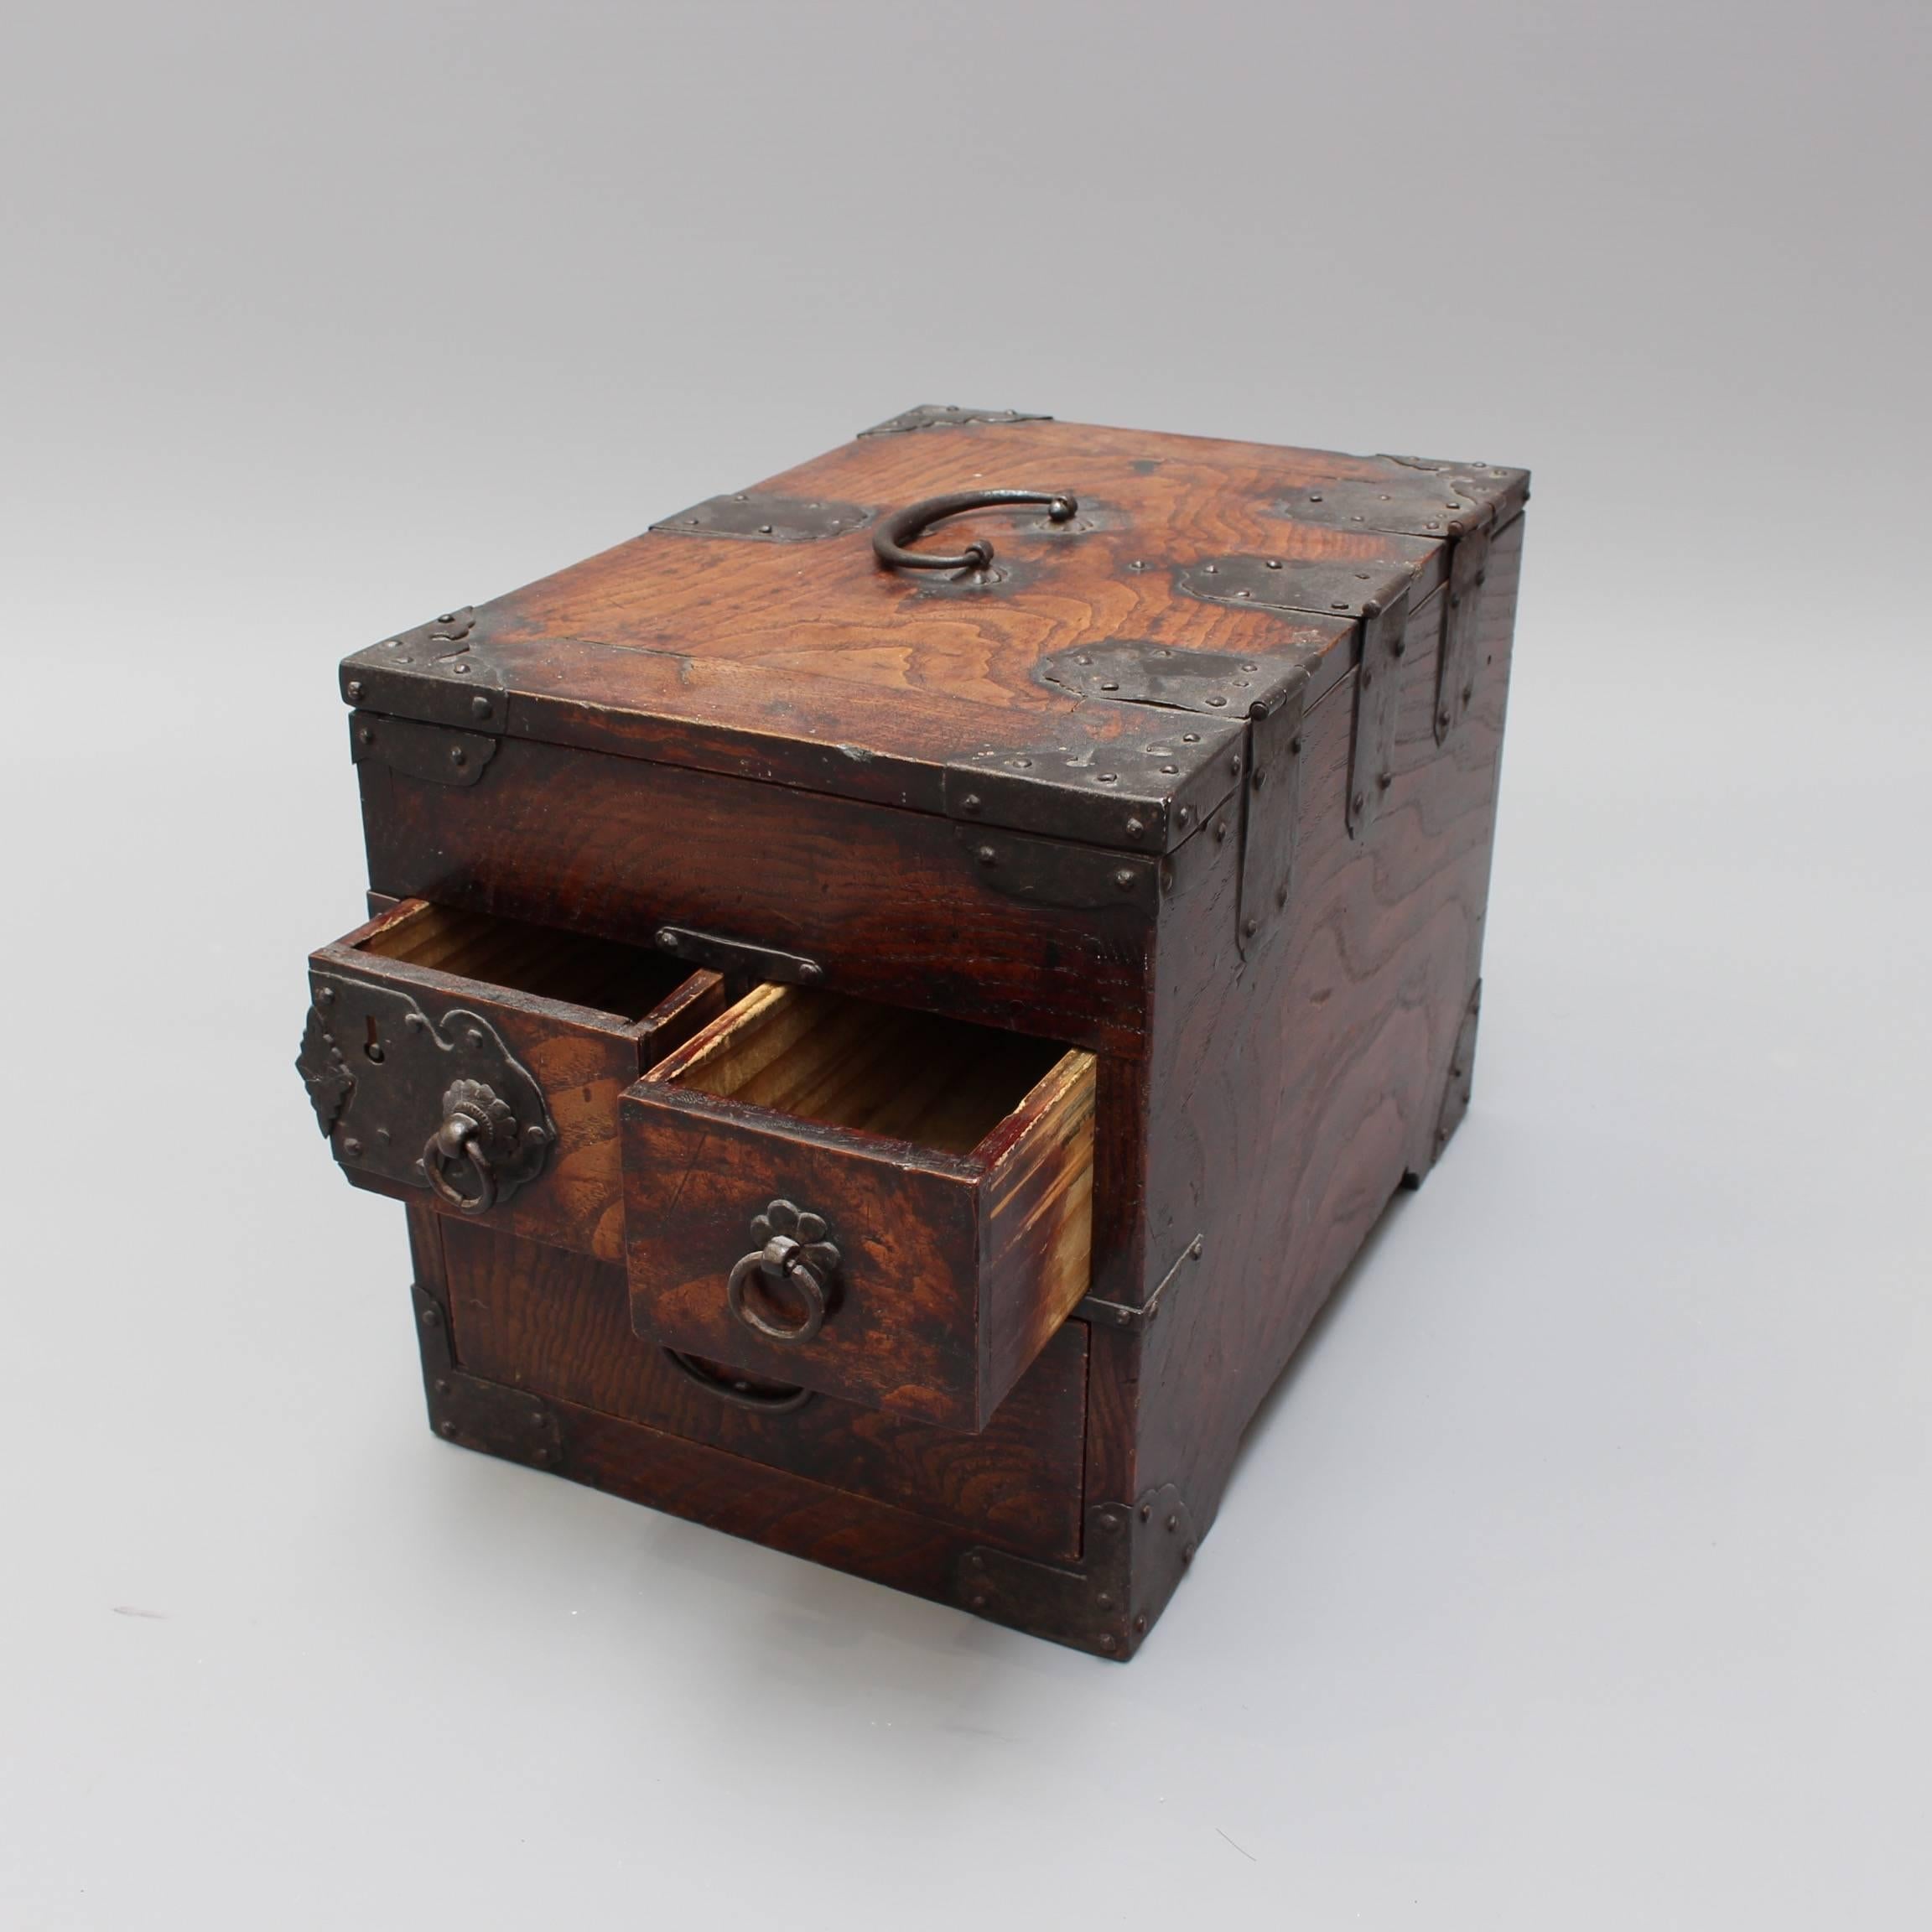 Antique Japanese Wooden Writing Box with Decorative Hardware 'Meiji Era' 2